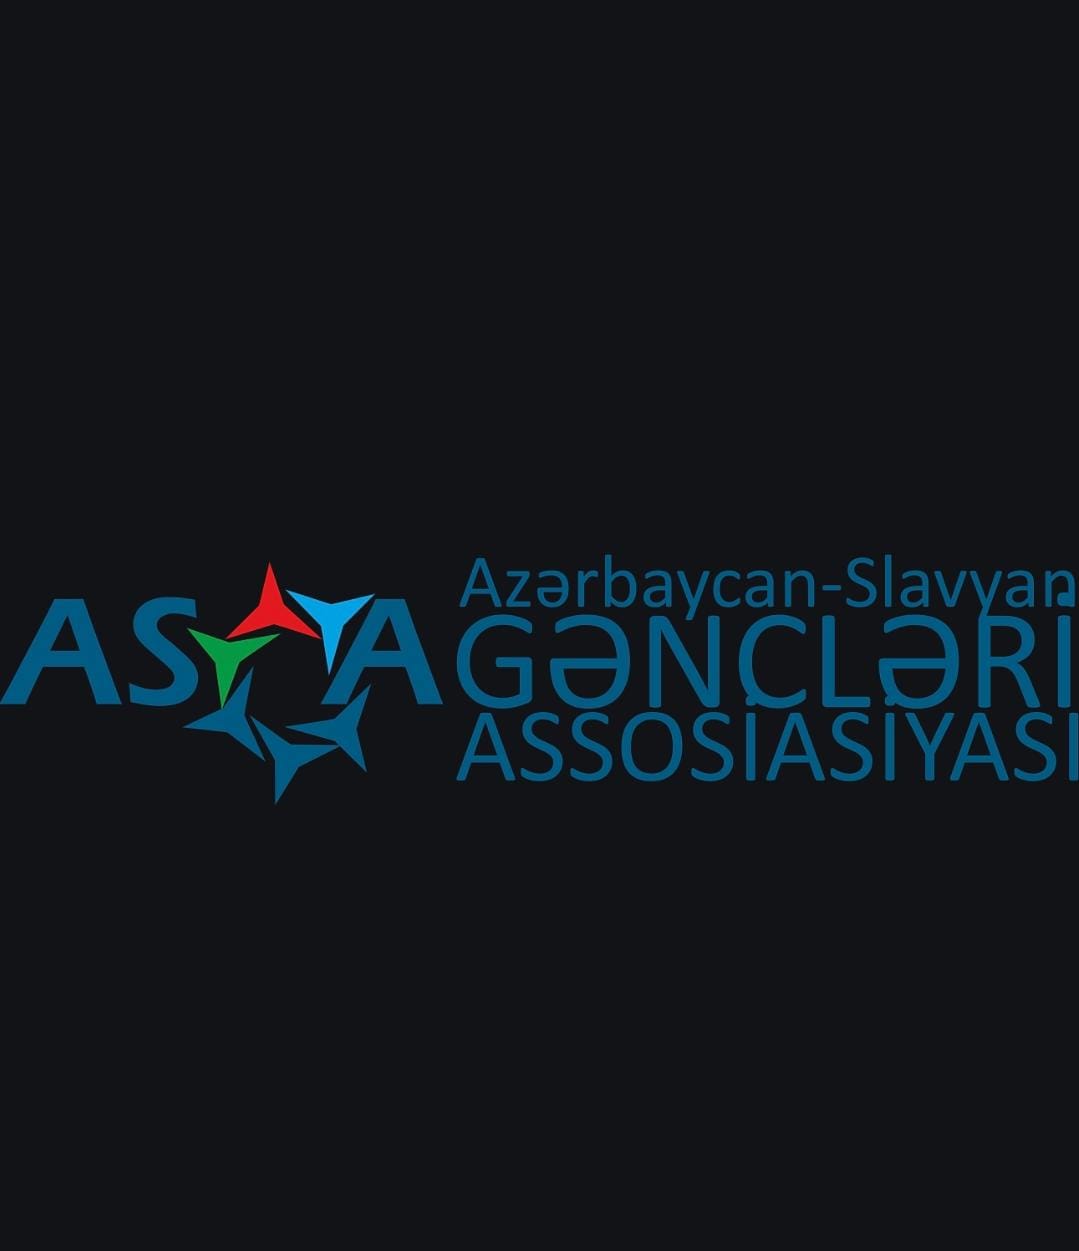 Azərbaycan-Slavyan Gənclər Assosiasiyası İctimai Birliyi (ASGA)